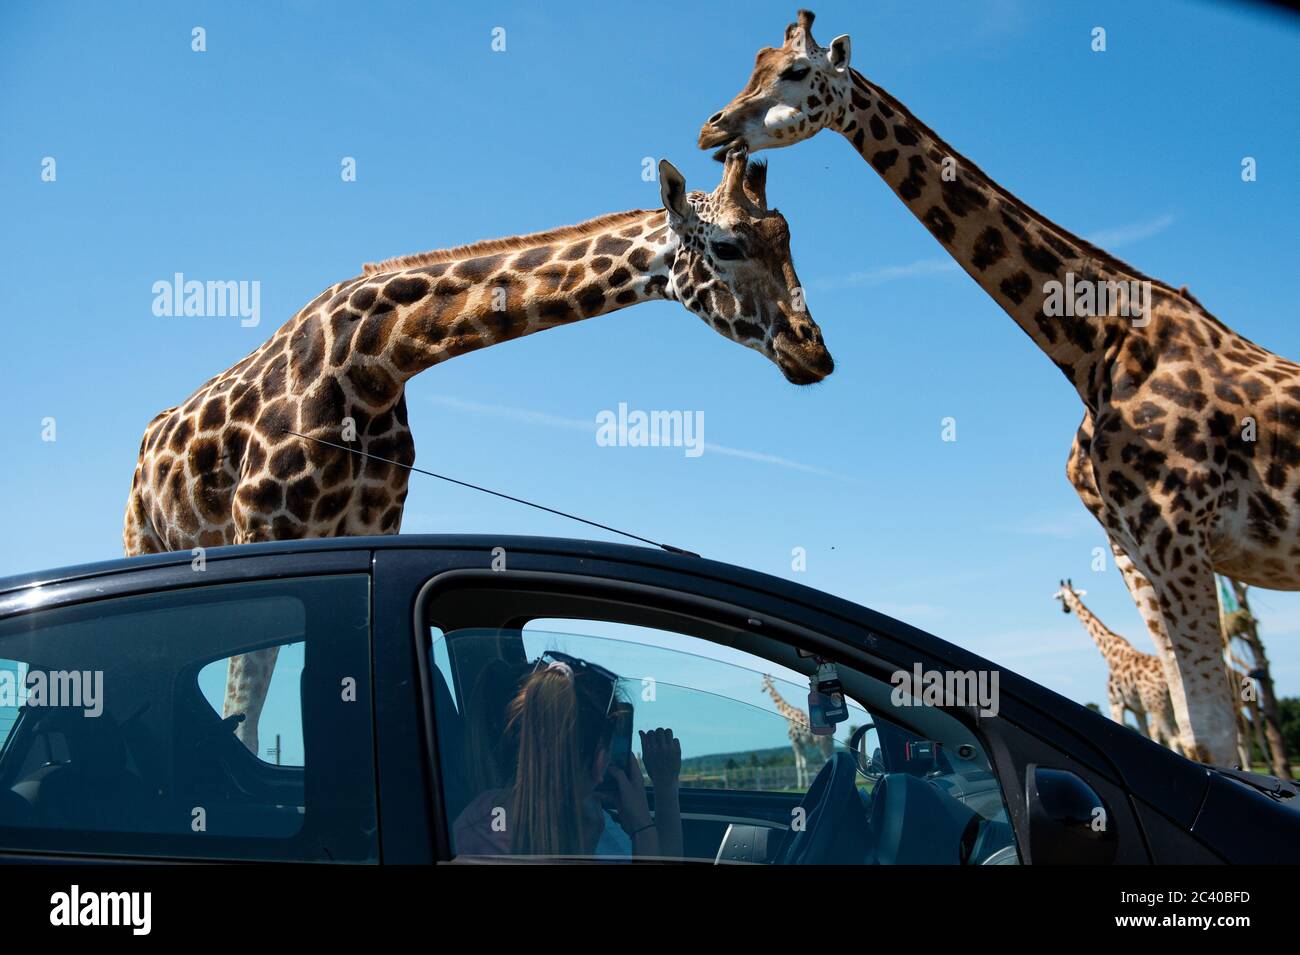 Besucher beobachten Giraffen im West Midlands Safari Park in Bewdley, da Großbritannien für eine Juni-Hitzewelle gerüstet ist, da die Temperaturen in dieser Woche bis in die Mitte der 30er Jahre steigen werden. Stockfoto